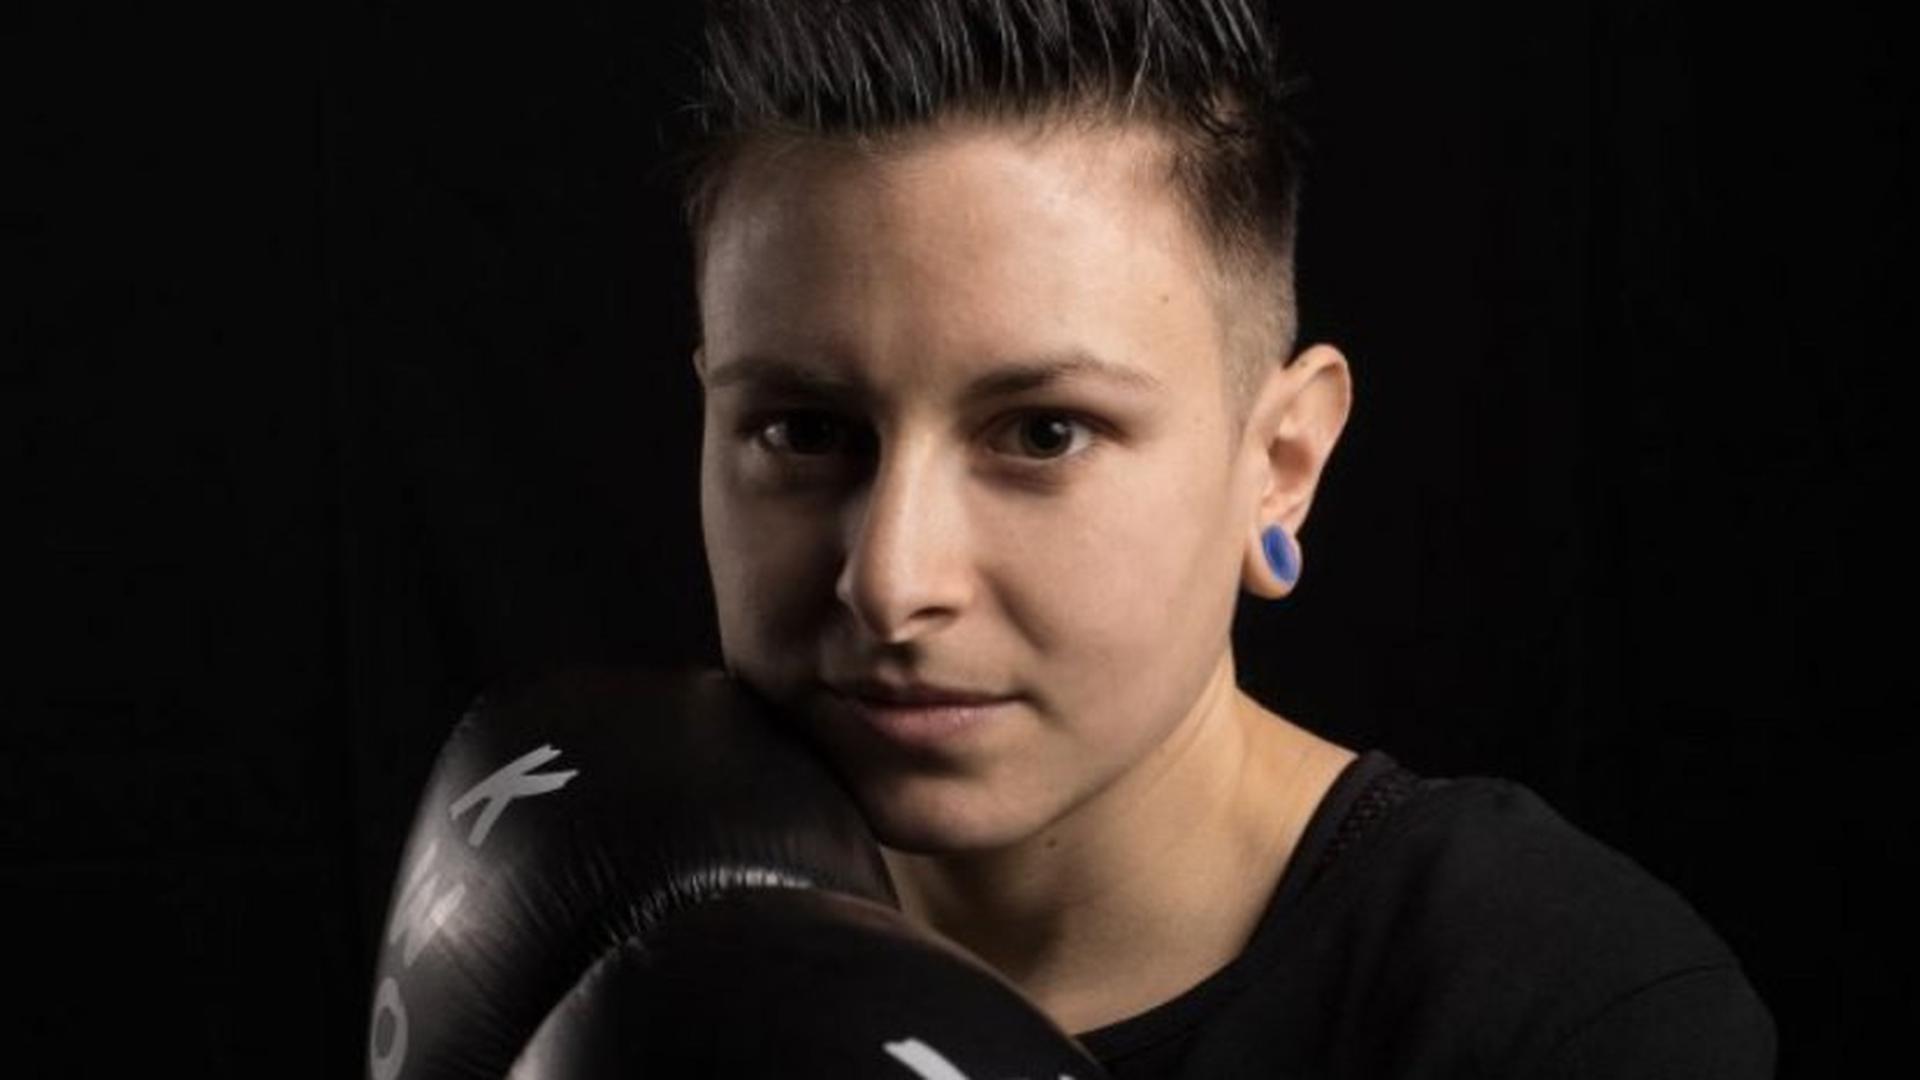 Bereit für den Kampf: Seit elf Jahren ist Sabrina Göppert begeisterte Kickboxerin. Inzwischen ist die Brettenerin Vizeweltmeisterin in den Disziplinen Vollkontakt, K1 und Kick light bis 50 Kilogramm.